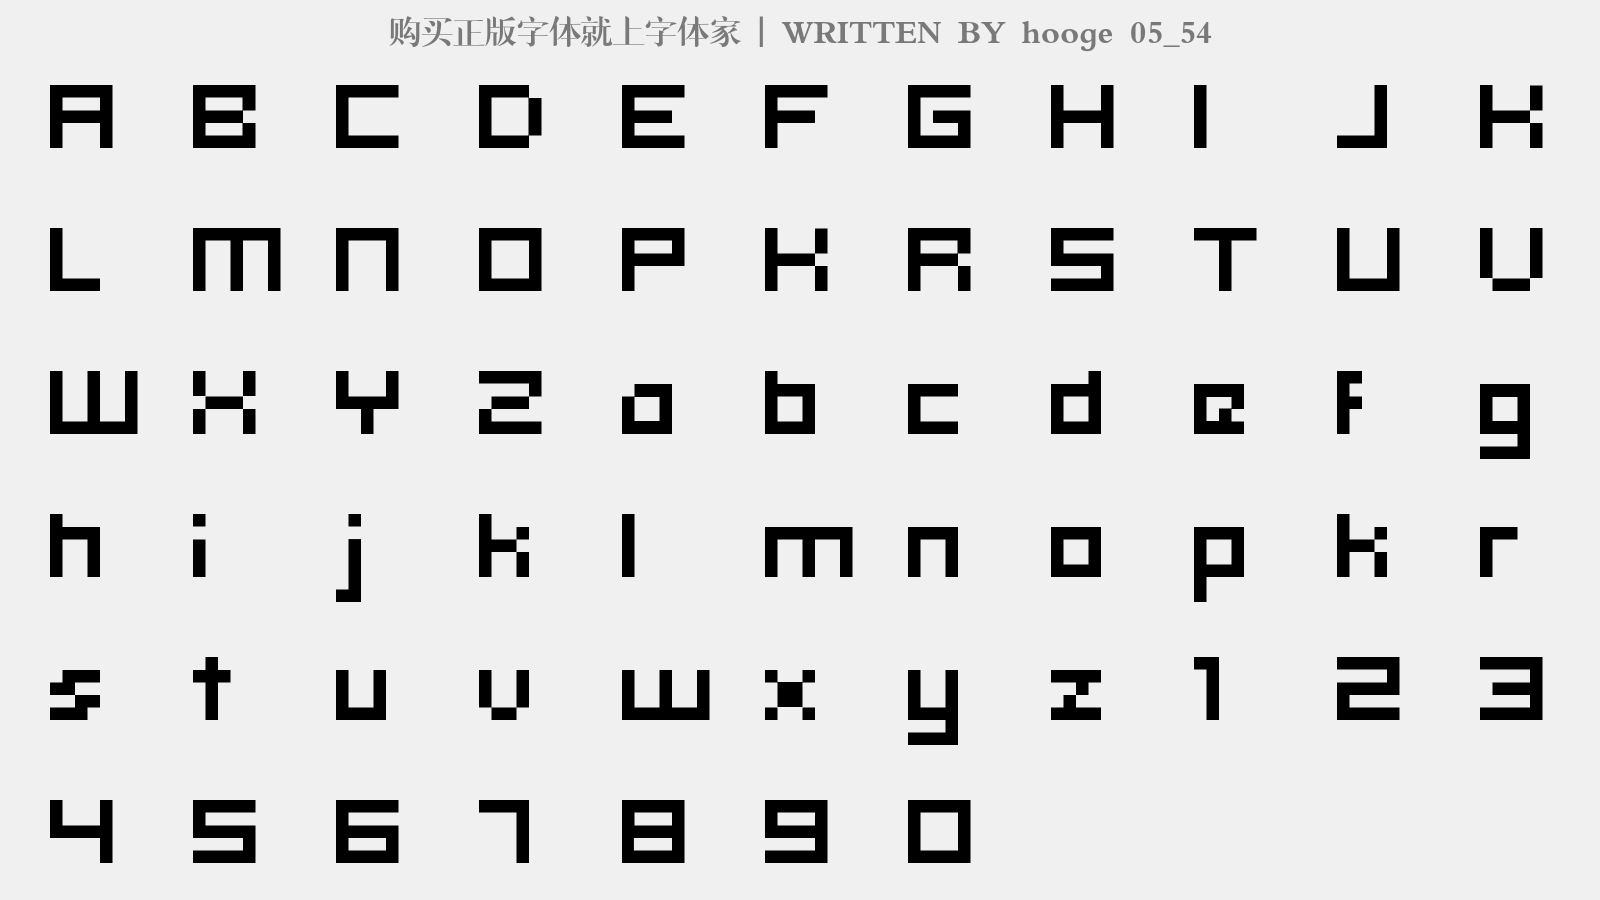 hooge 05_54 - 大写字母/小写字母/数字